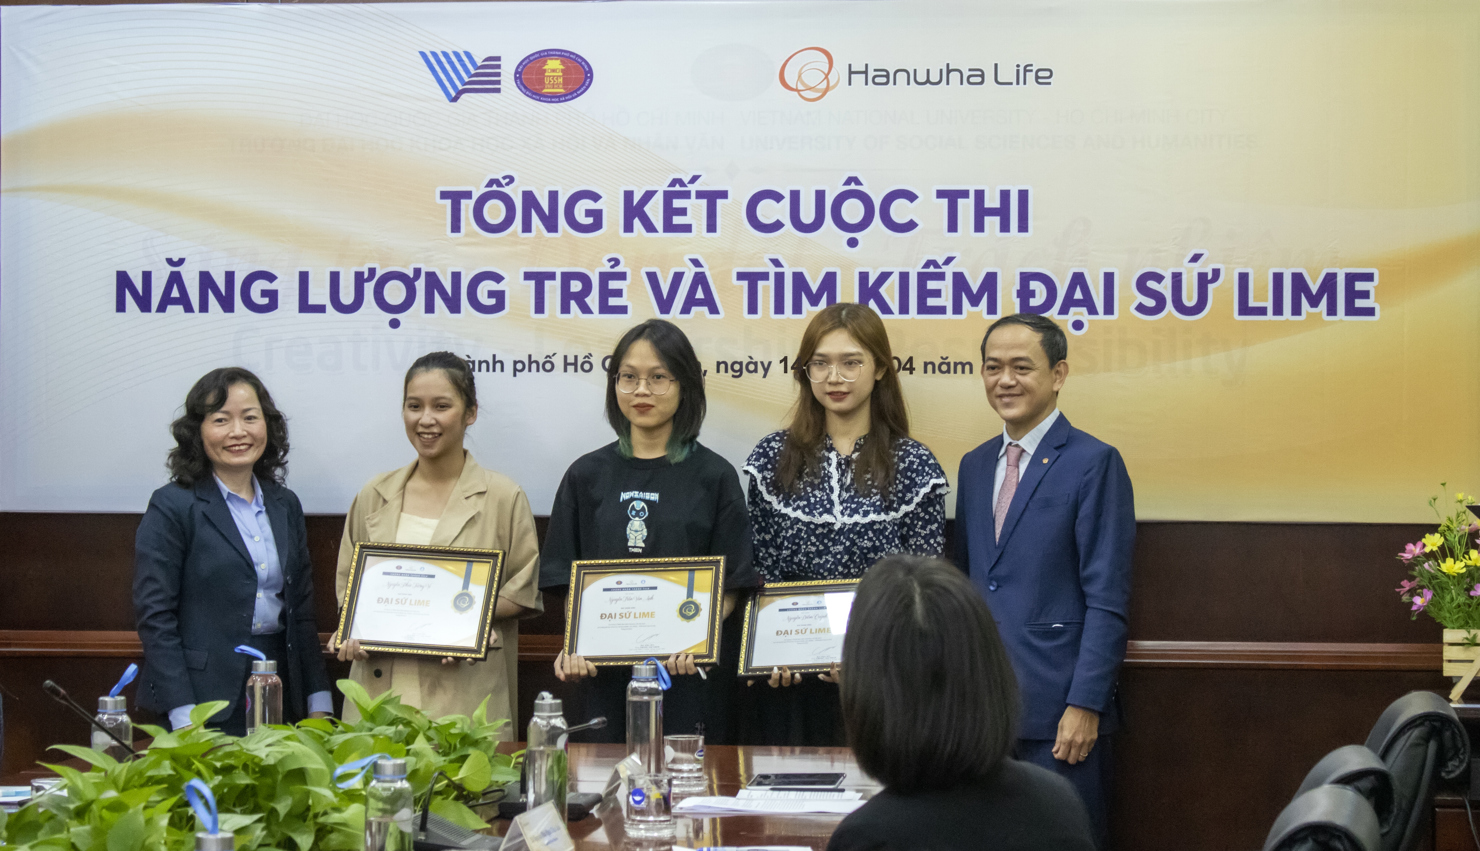 Đại diện Hanwha Life Việt Nam trao thưởng cho 03 Đại sứ Lime tại buổi trao giải tổng kết chương trình.